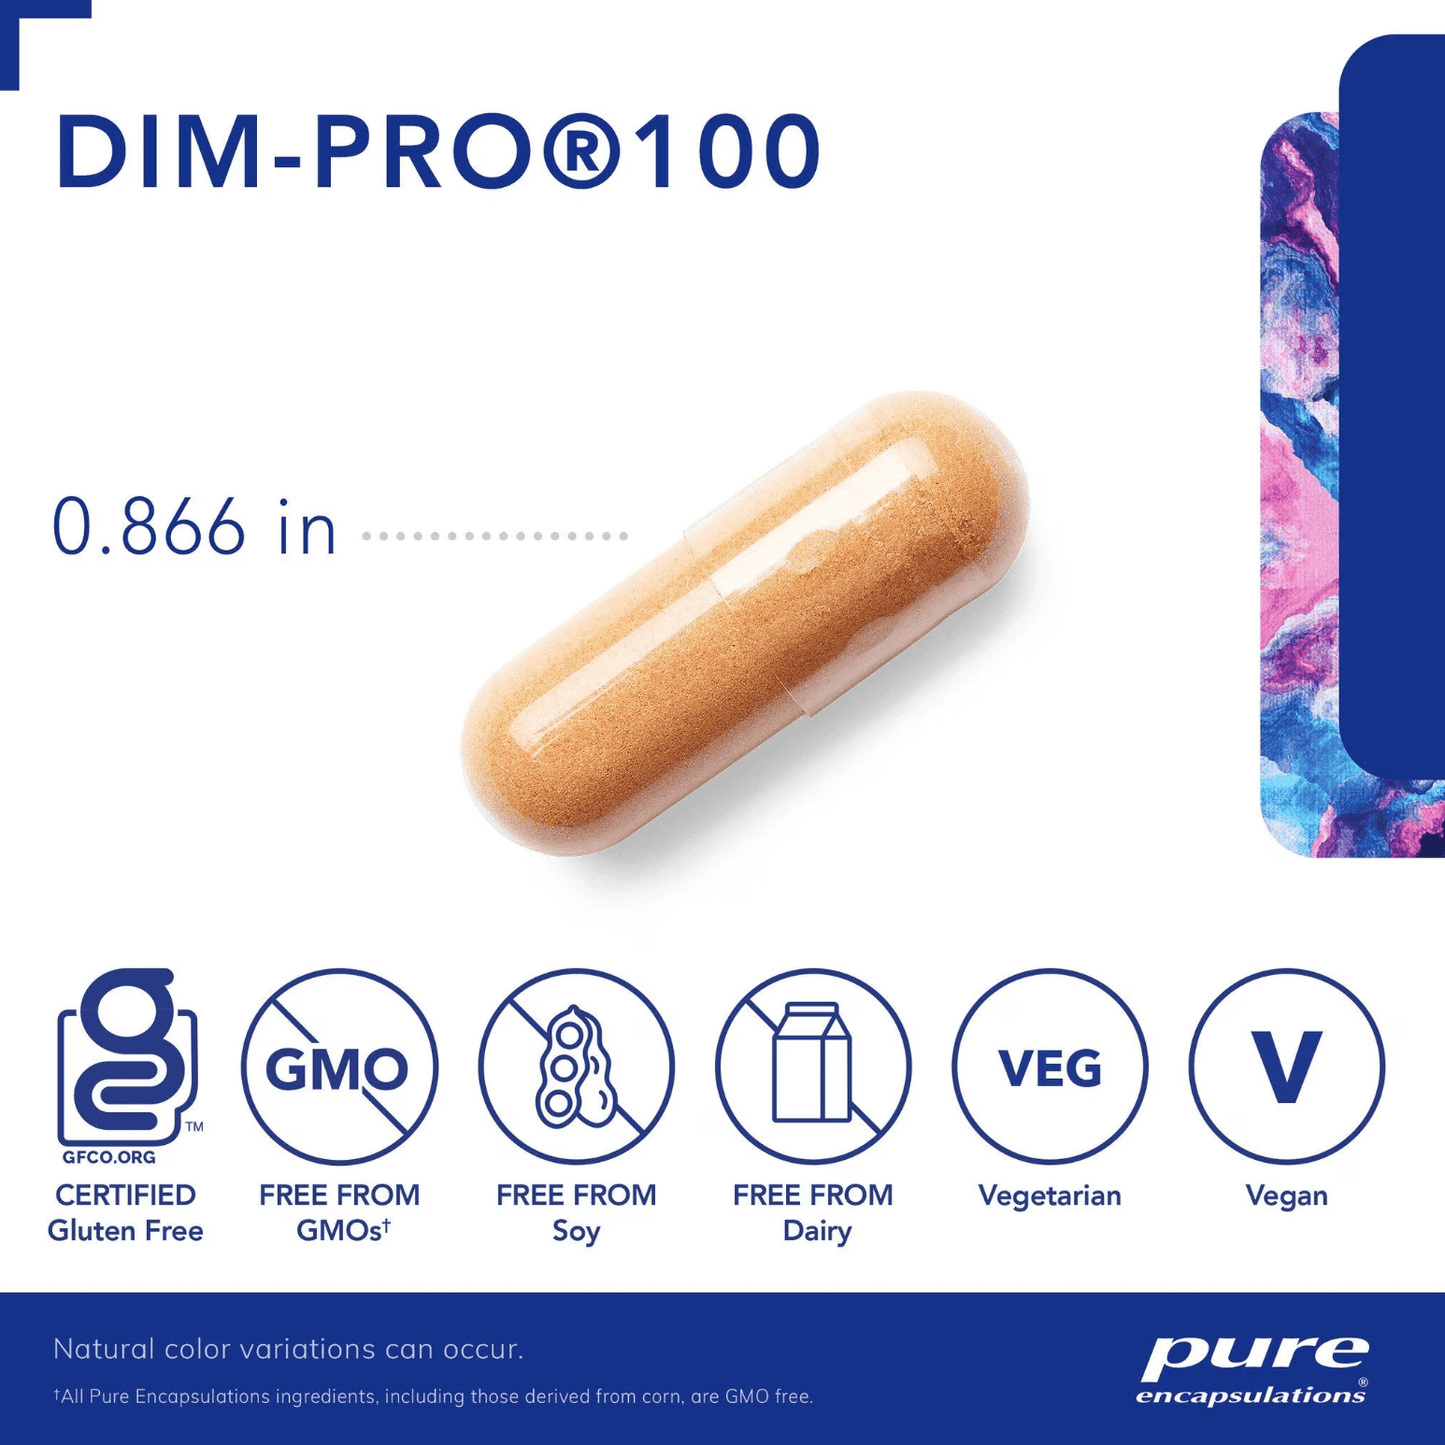 Pure Encapsulations DimPro 100 Capsules